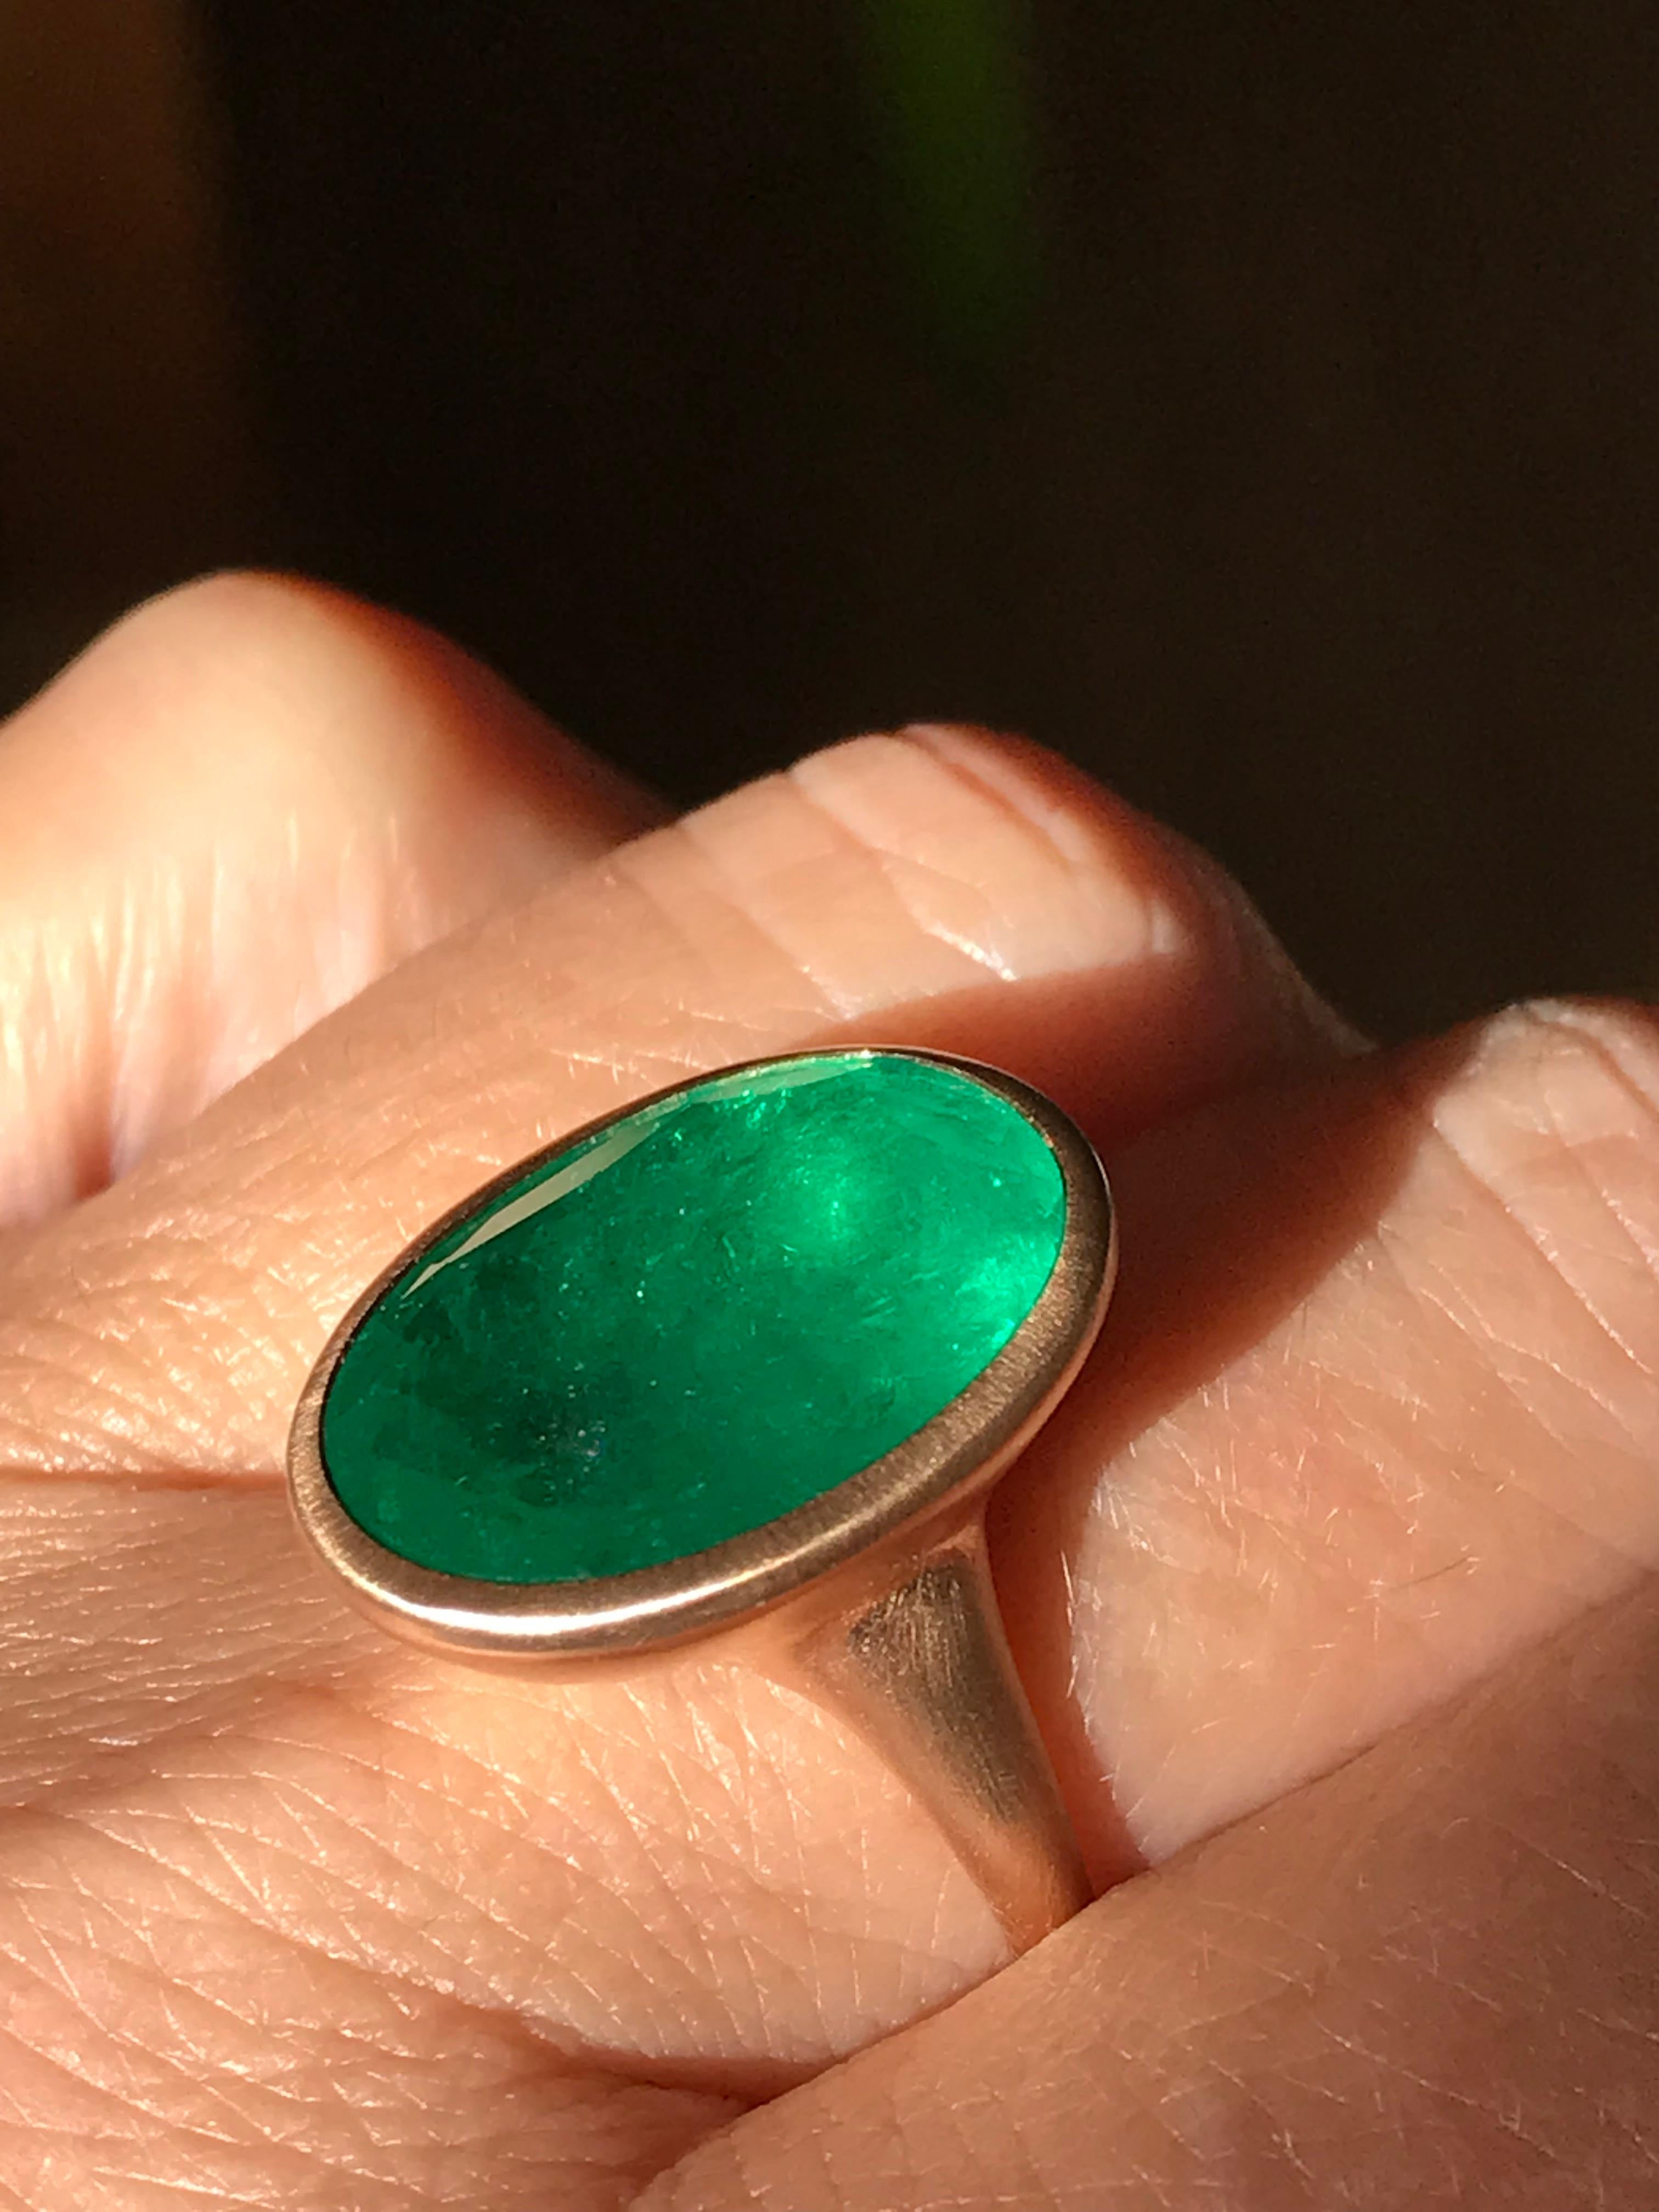 11 carat emerald